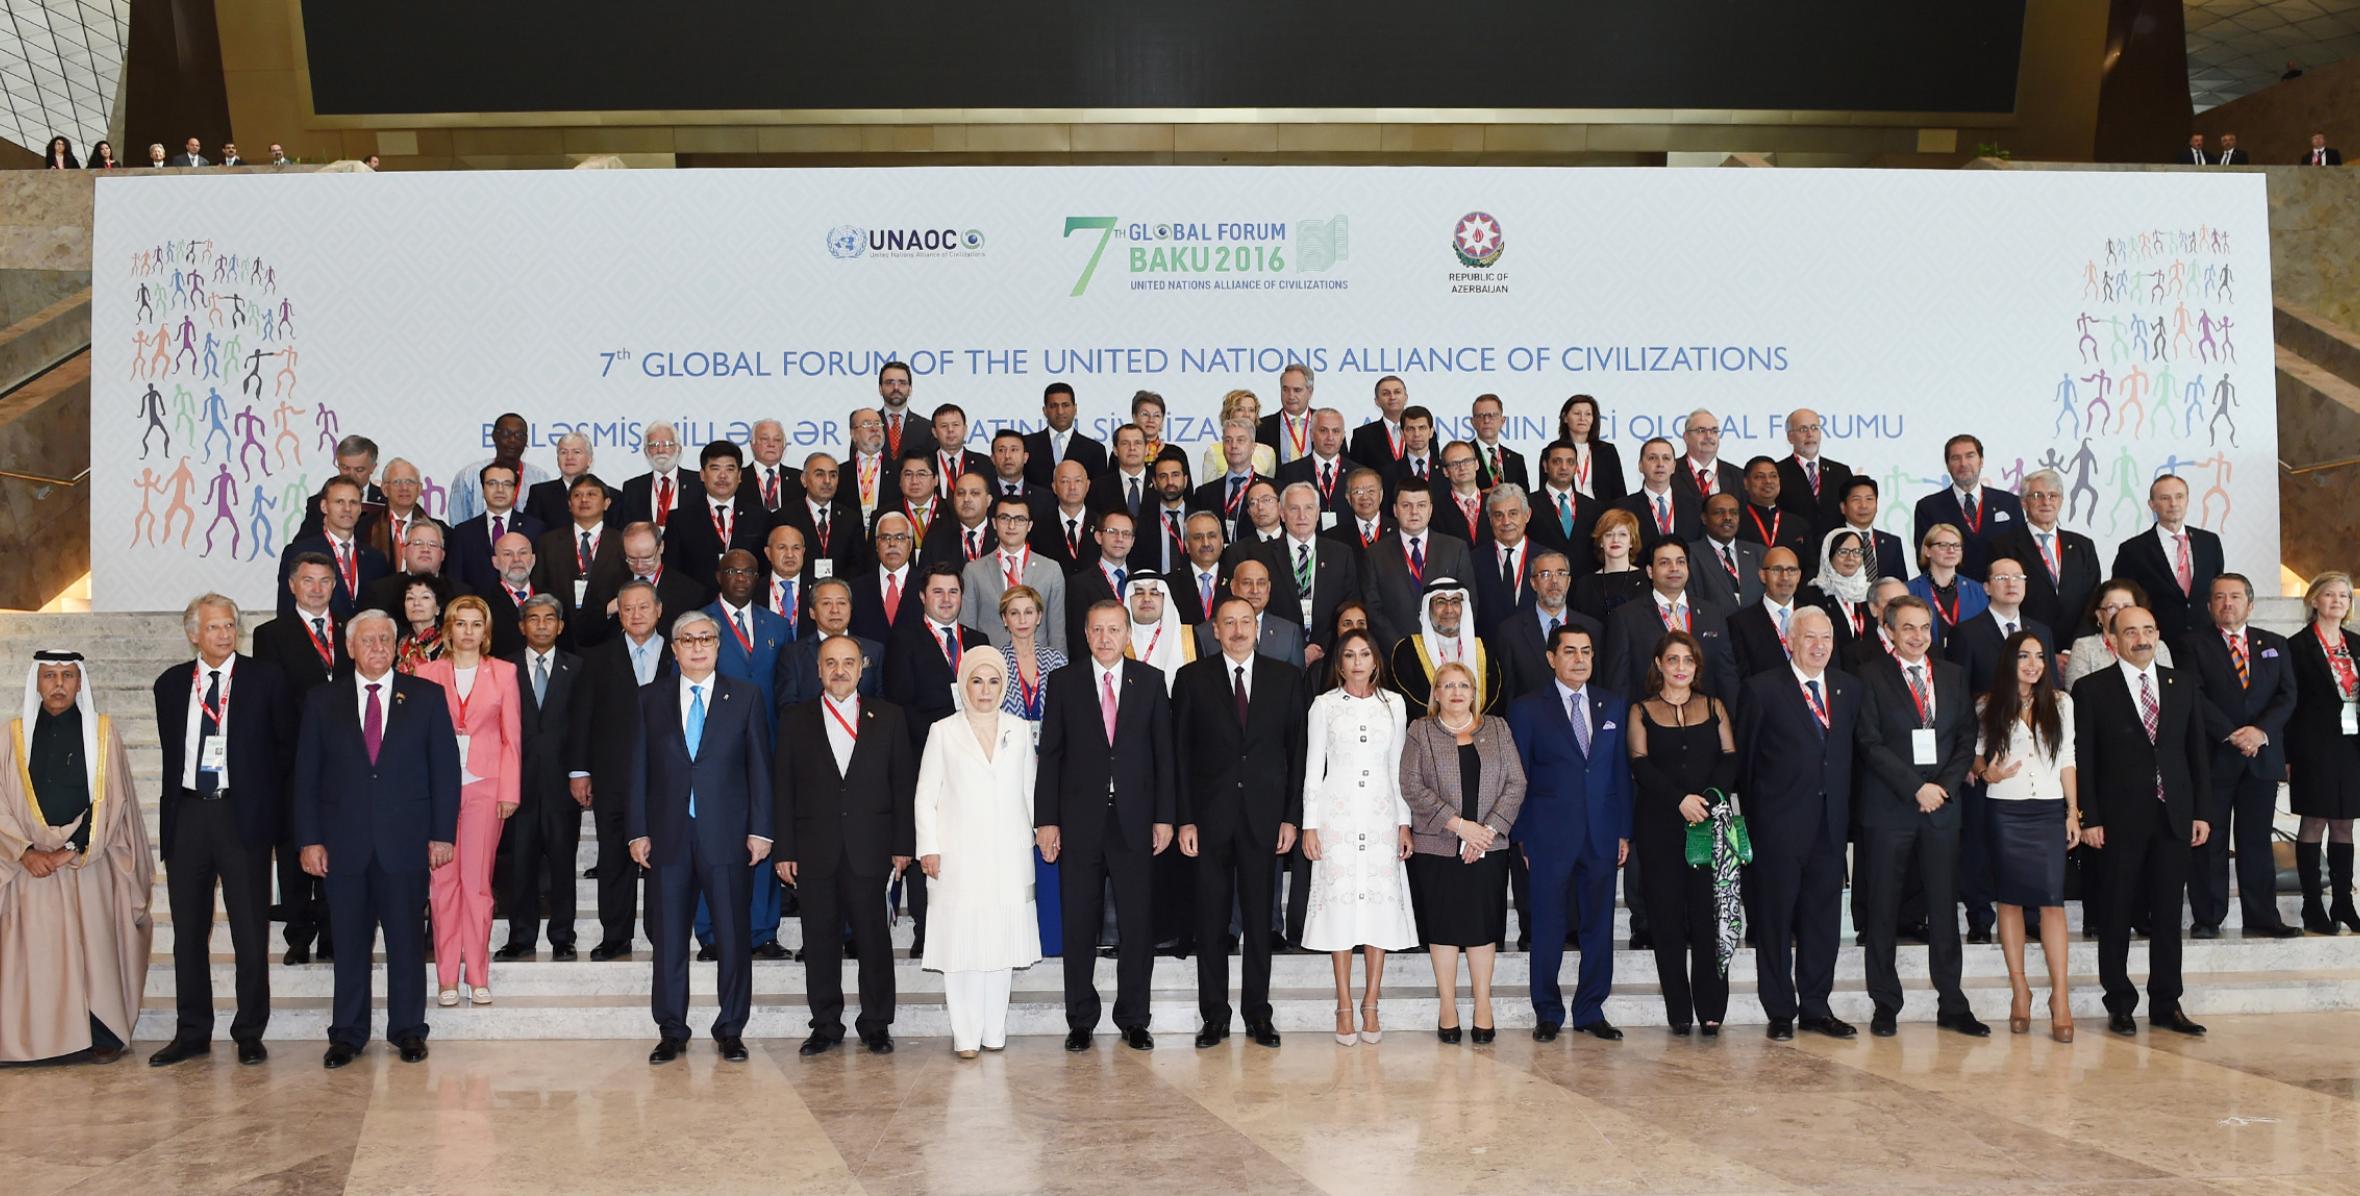 İlham Əliyev BMT-nin Sivilizasiyalar Alyansının VII Qlobal Forumunun rəsmi açılışında iştirak edib